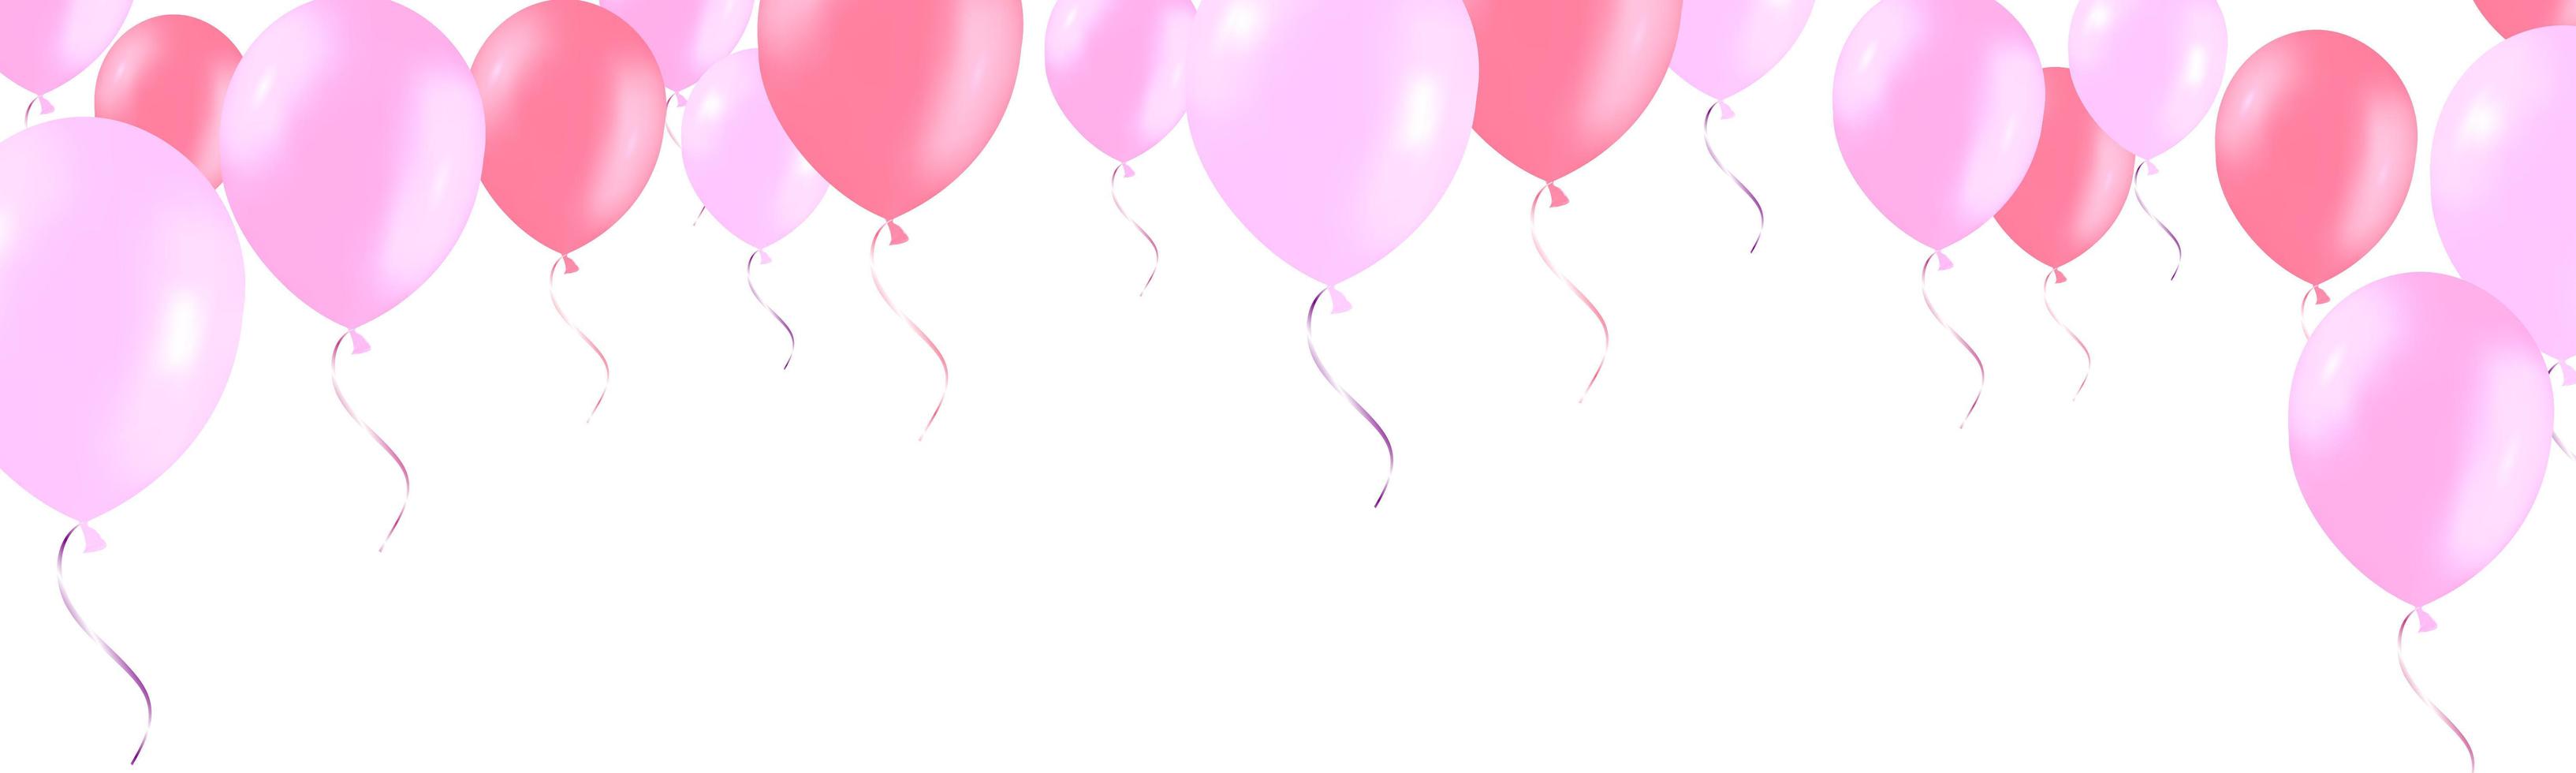 bannière horizontale avec des ballons à l'hélium rose rose vecteur